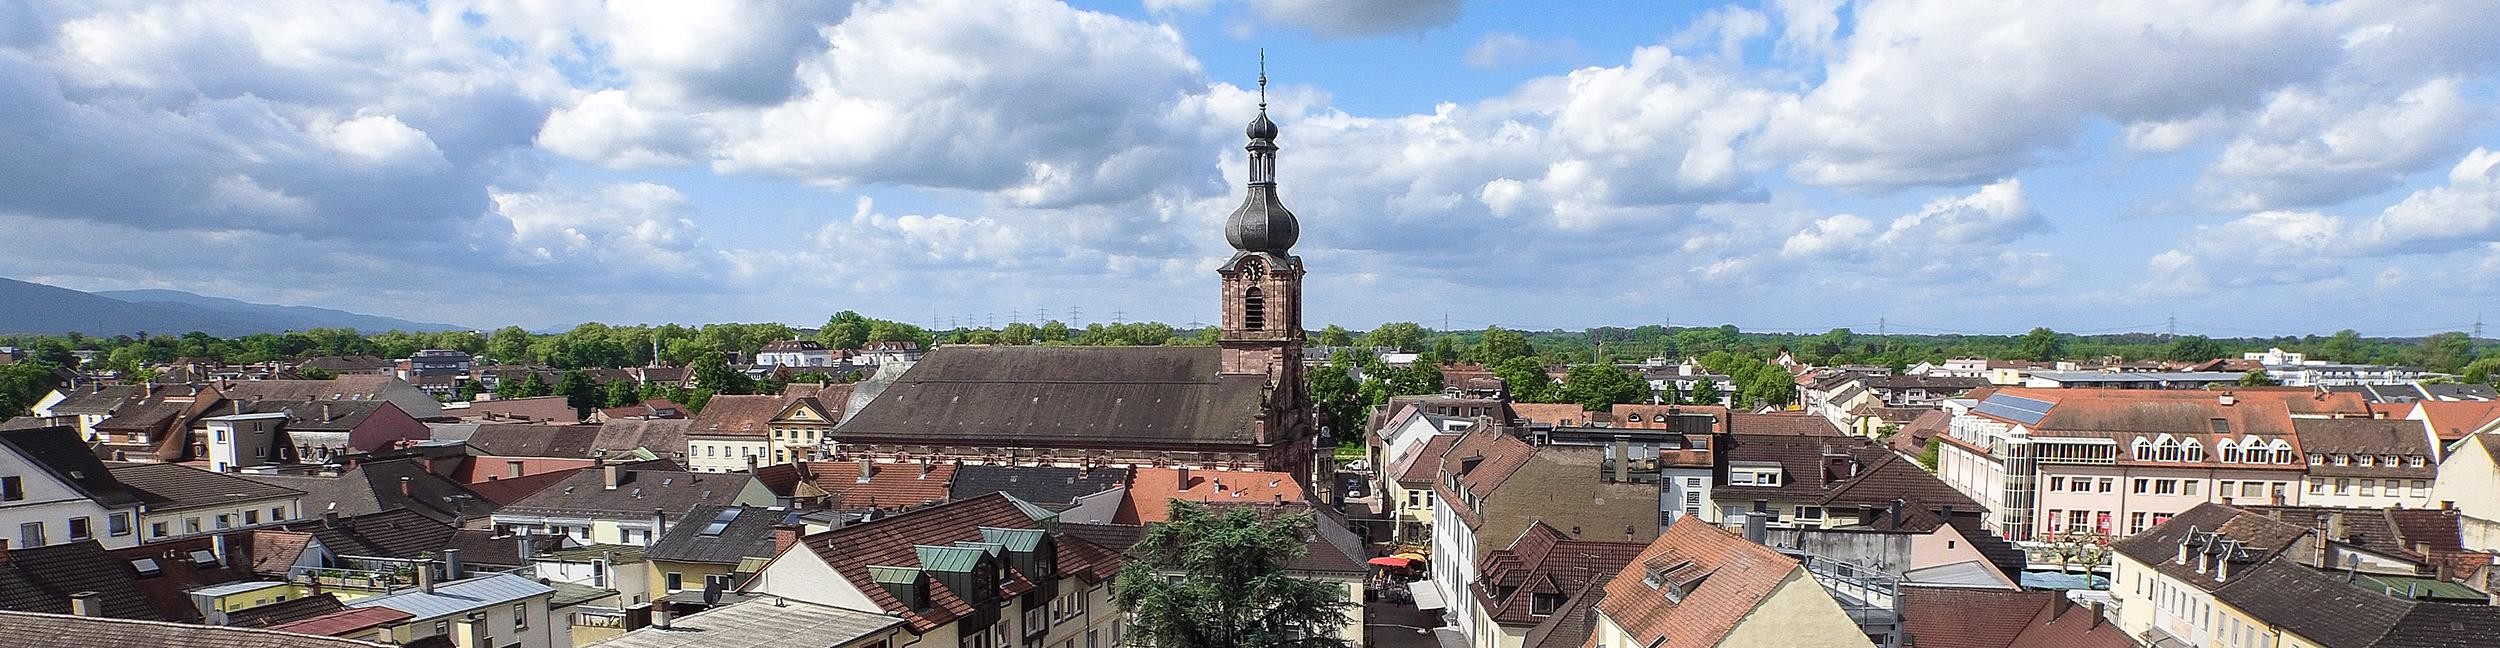 Aerial view of Rastatt city center